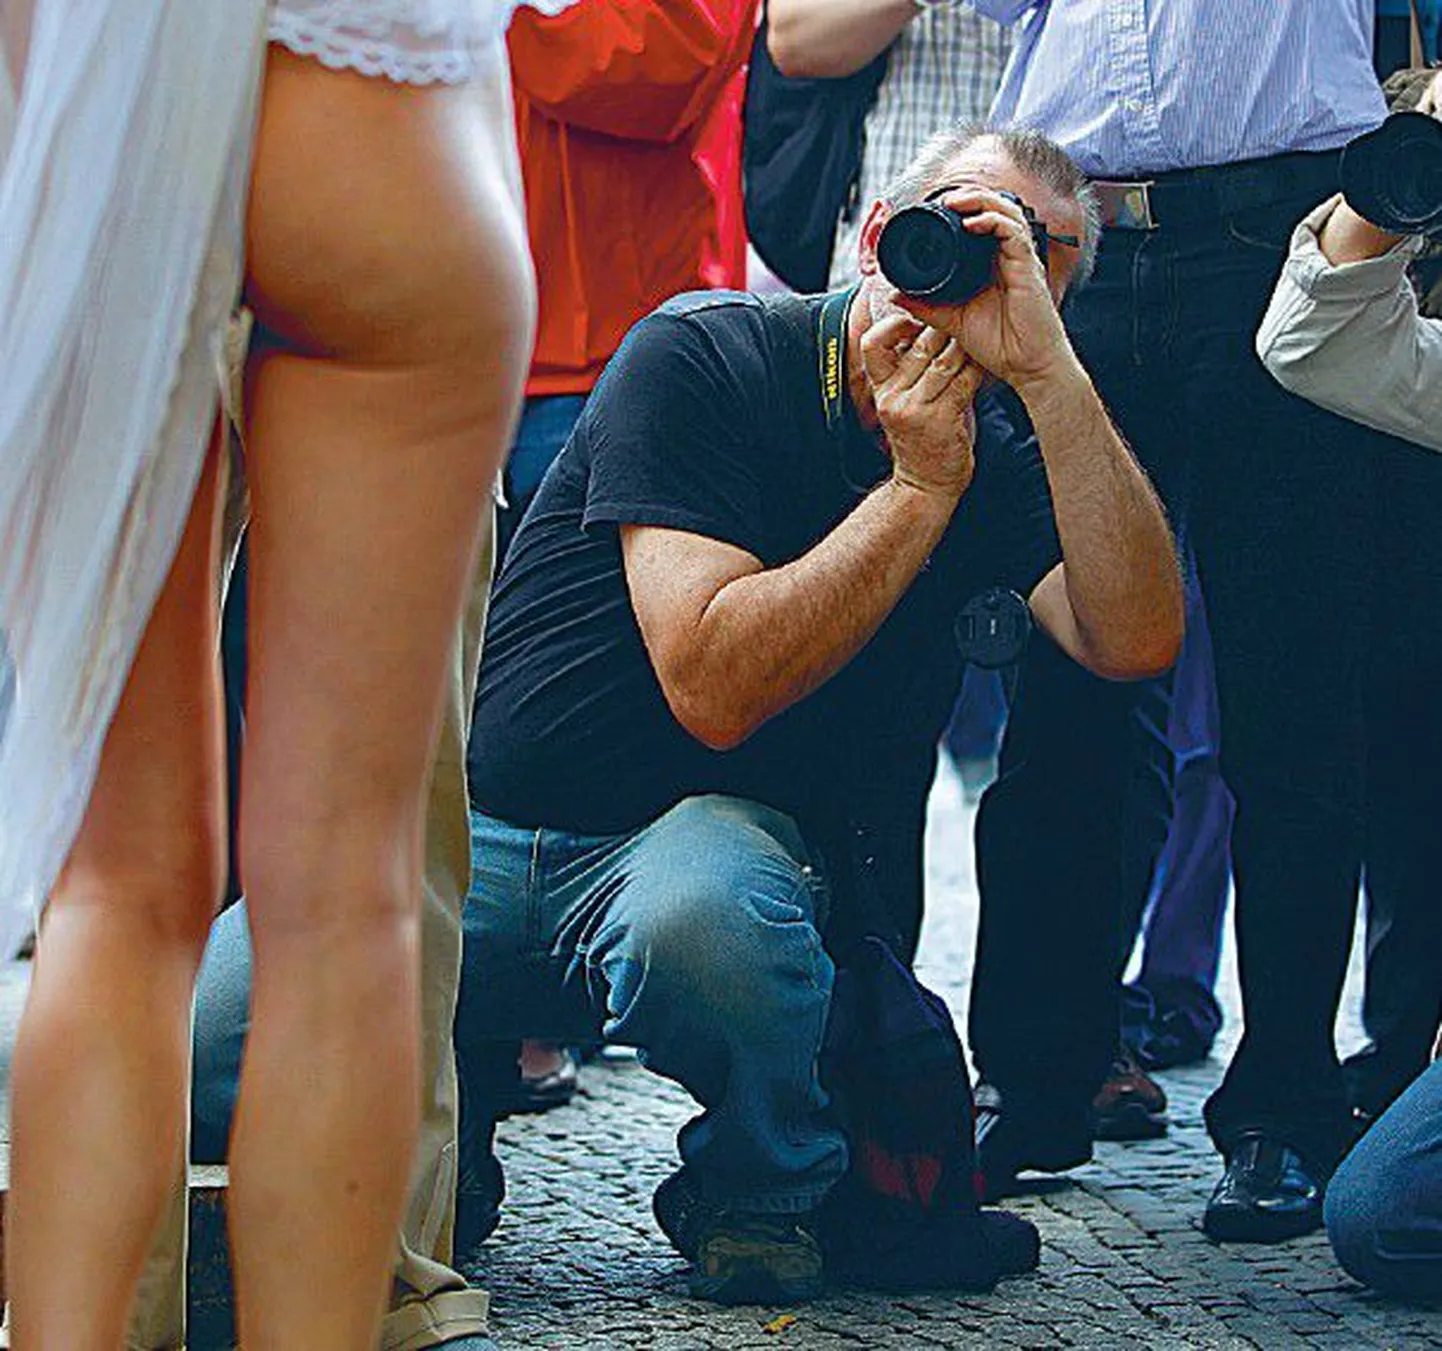 Fotograafid üleeile Berliinis piiramas protestiaktsioonist Slutwalk osavõtjat.